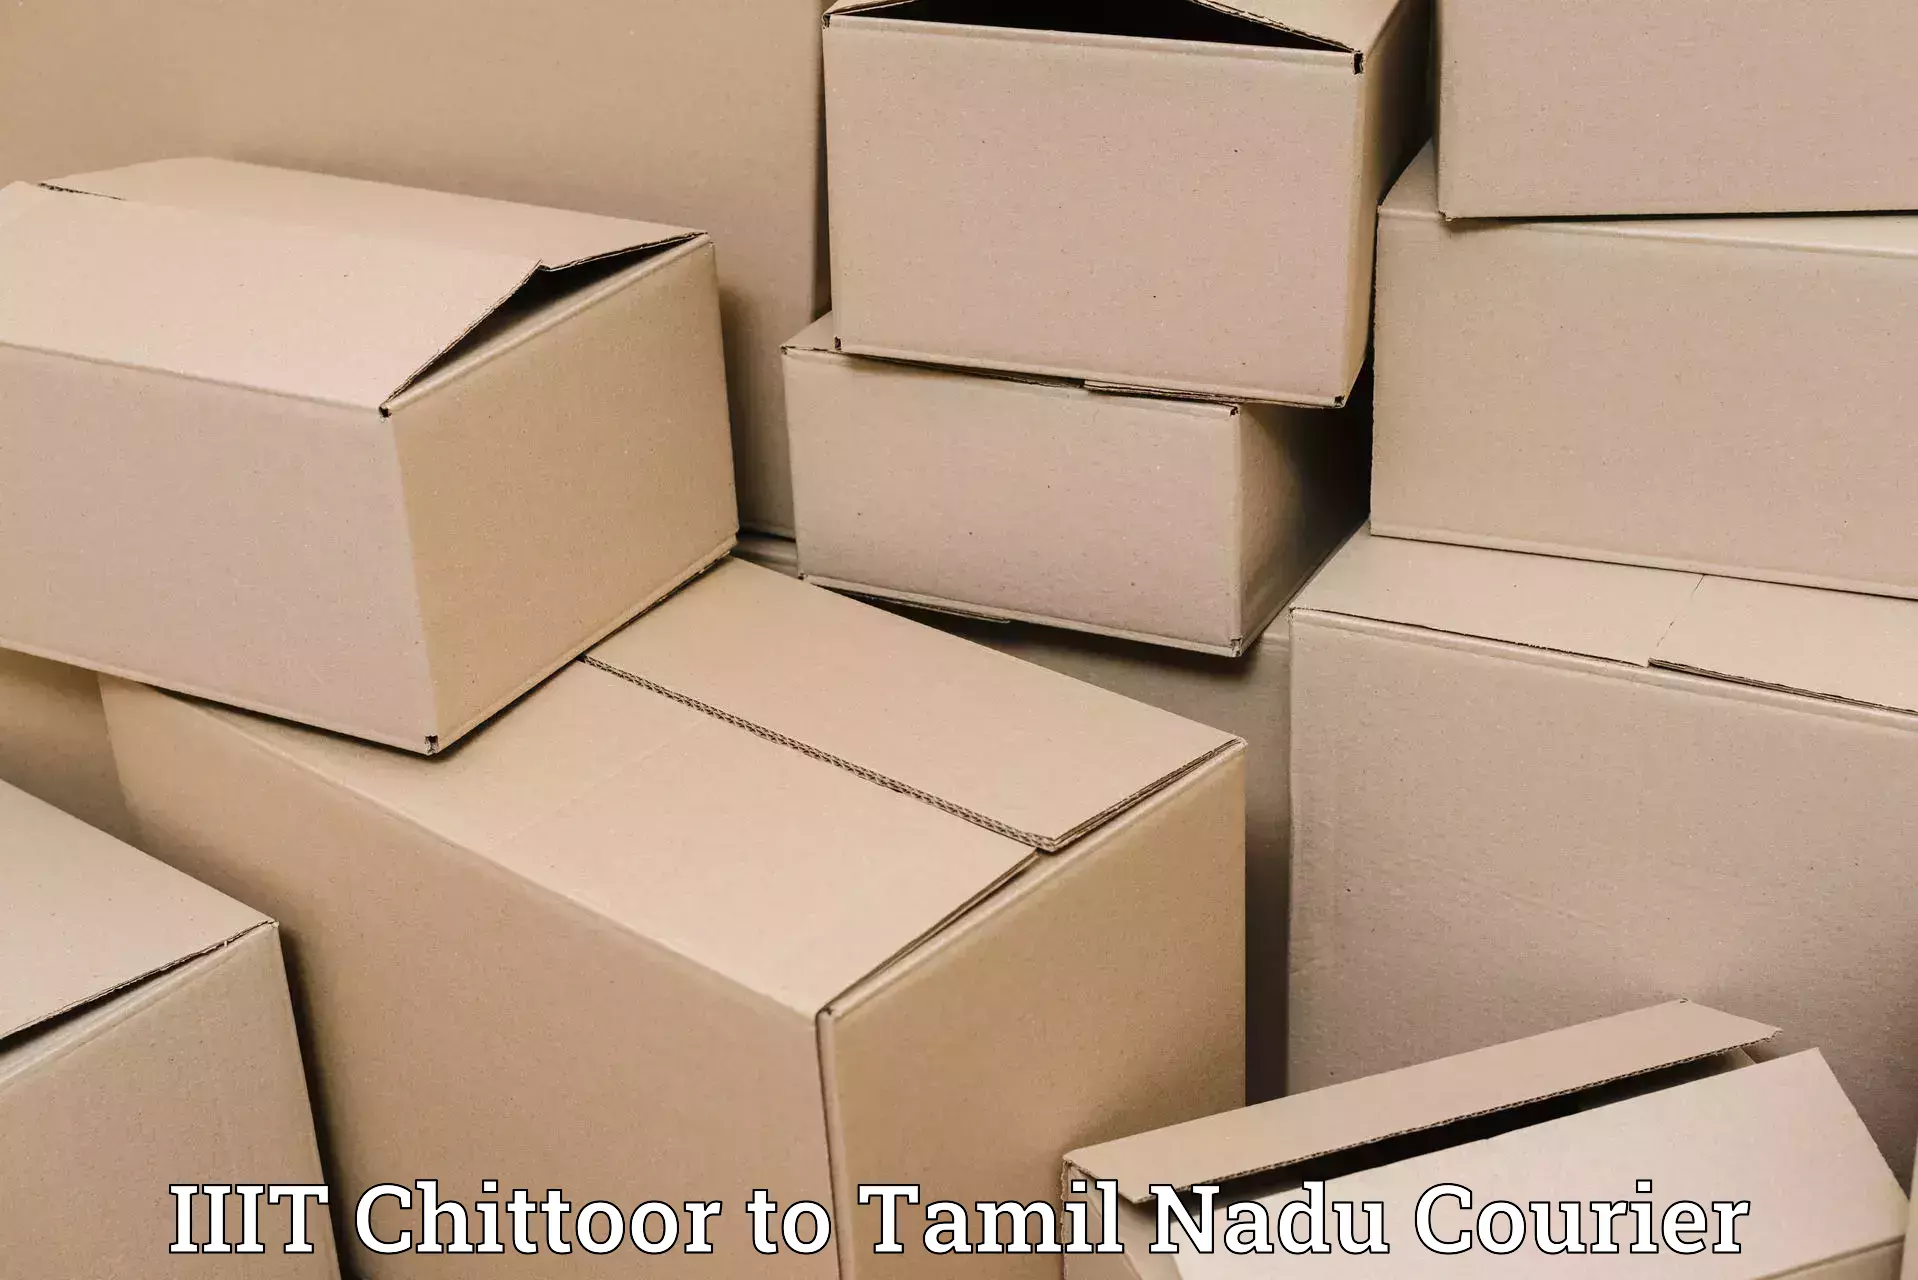 Next day courier IIIT Chittoor to Tiruvallur